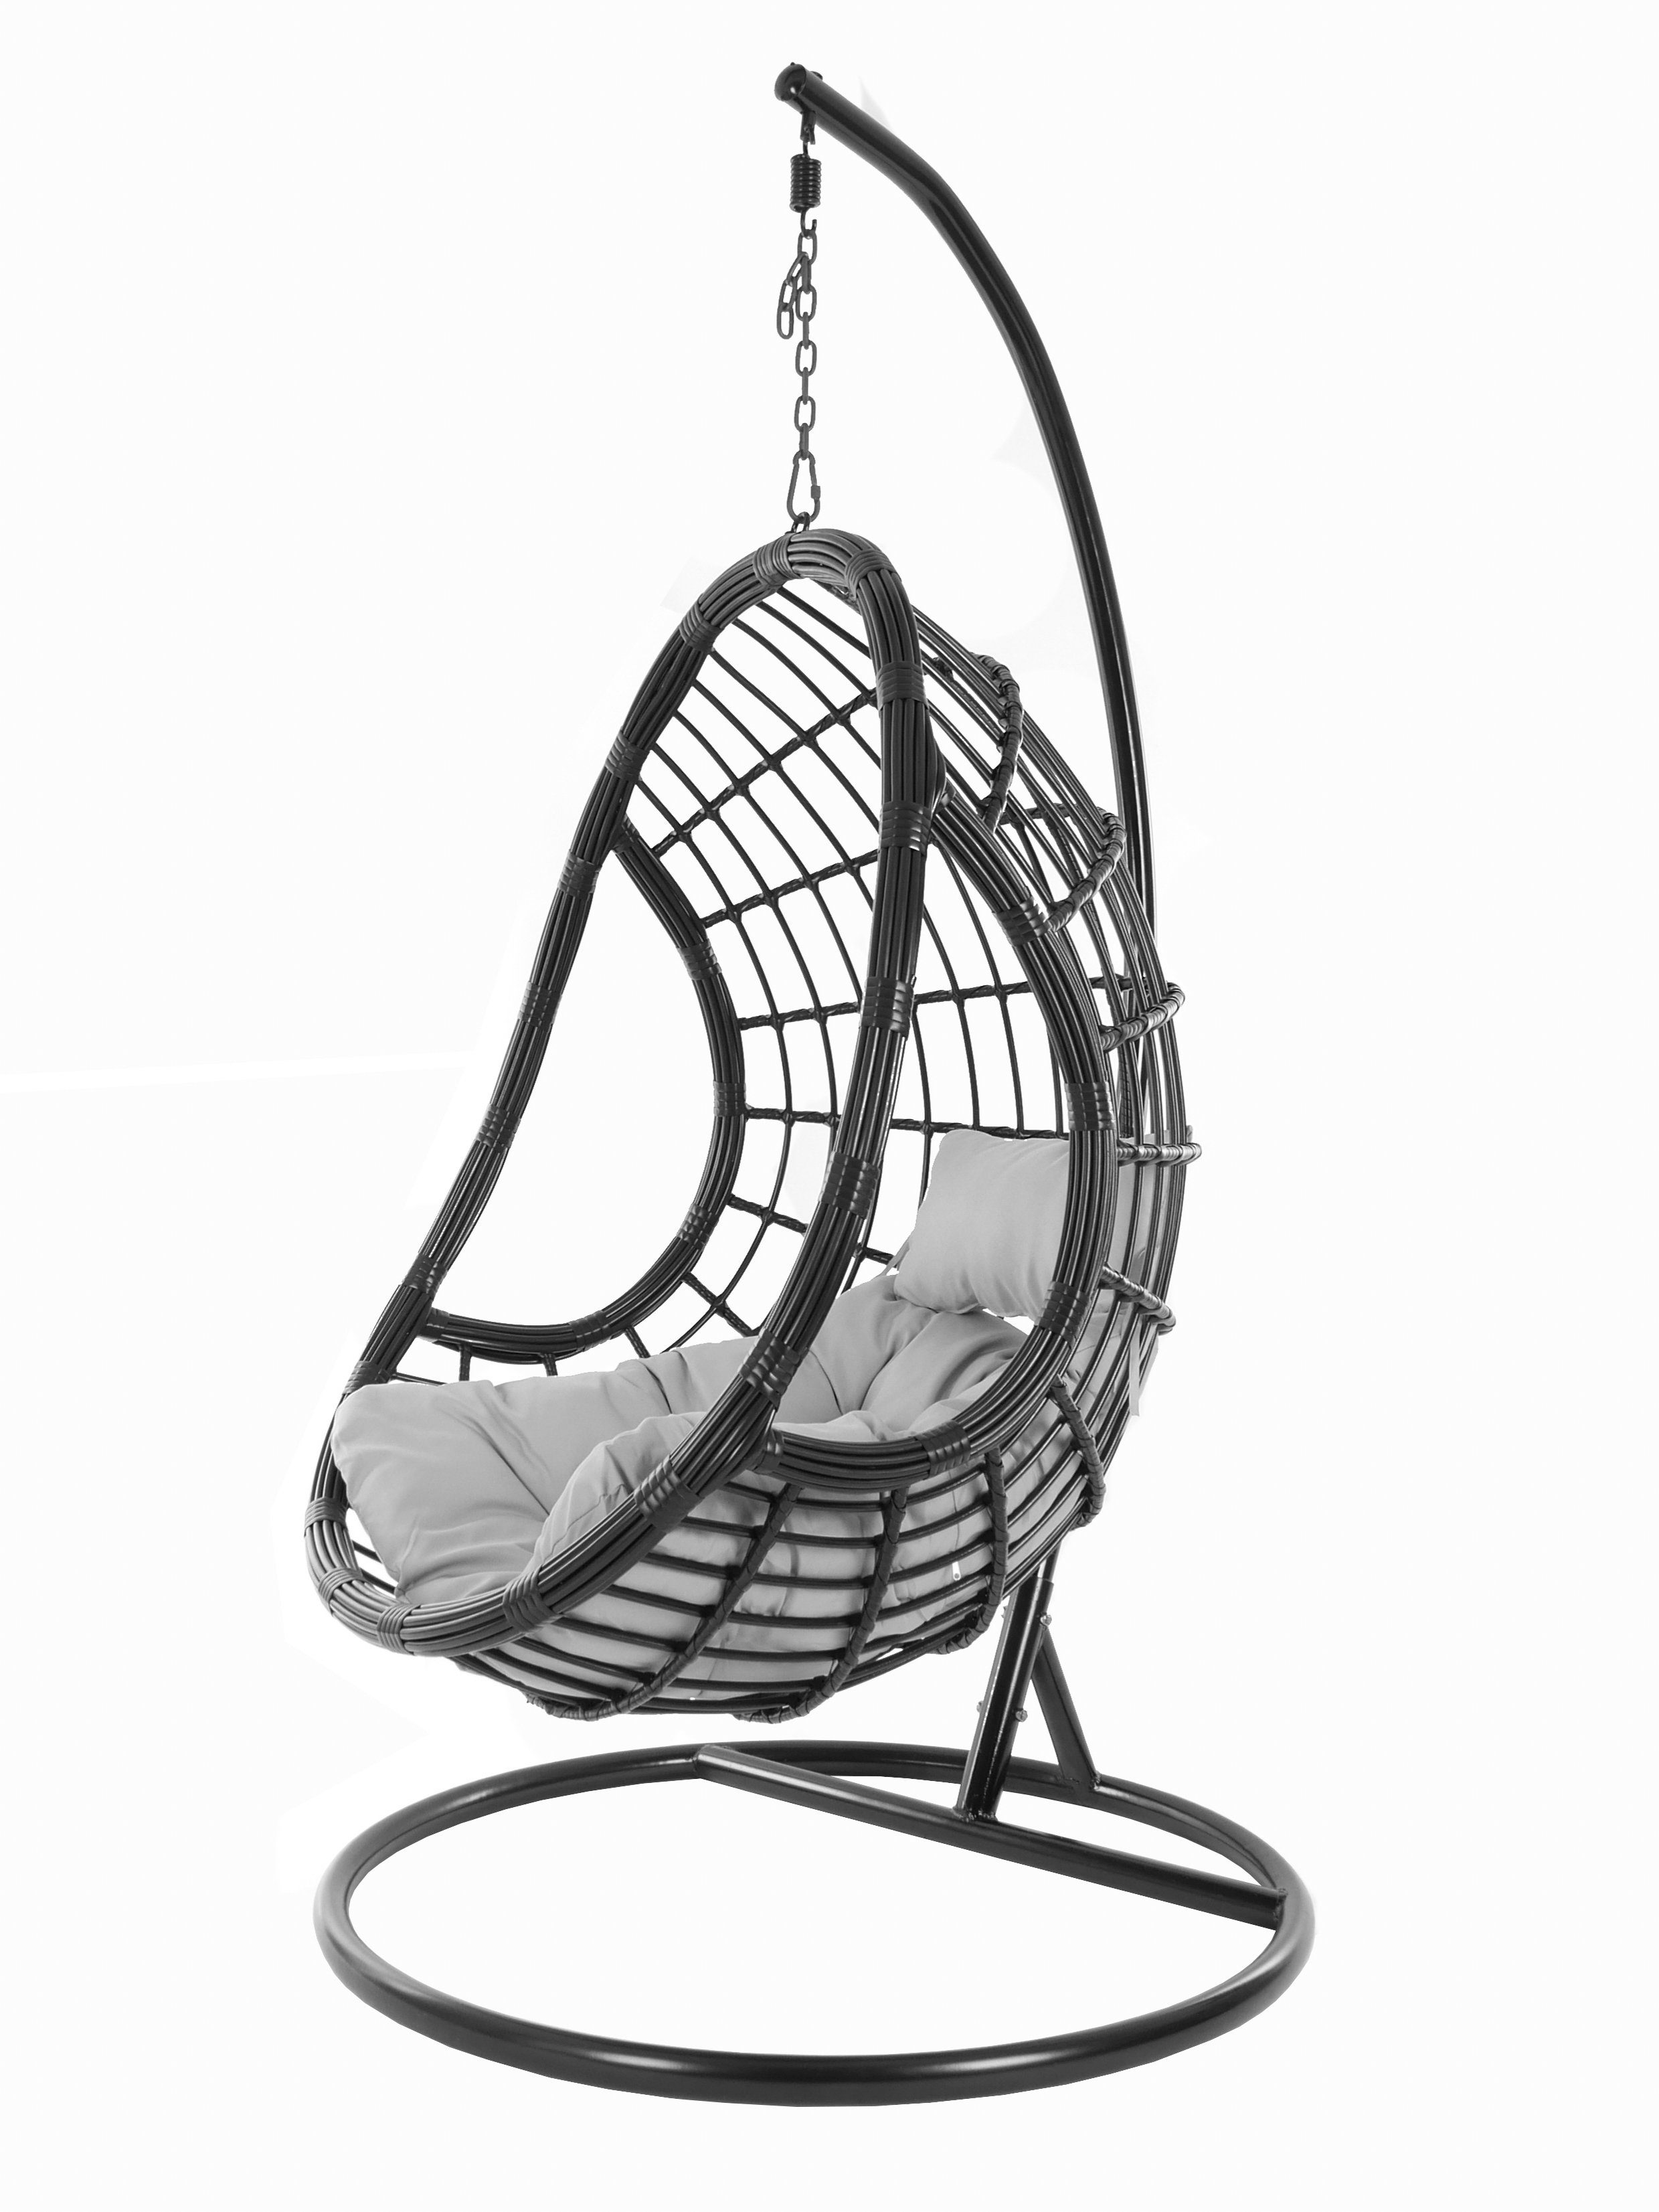 KIDEO Hängesessel PALMANOVA black, Swing Chair, schwarz, Loungemöbel, Hängesessel mit Gestell und Kissen, Schwebesessel, edles Design grau (8008 cloud)